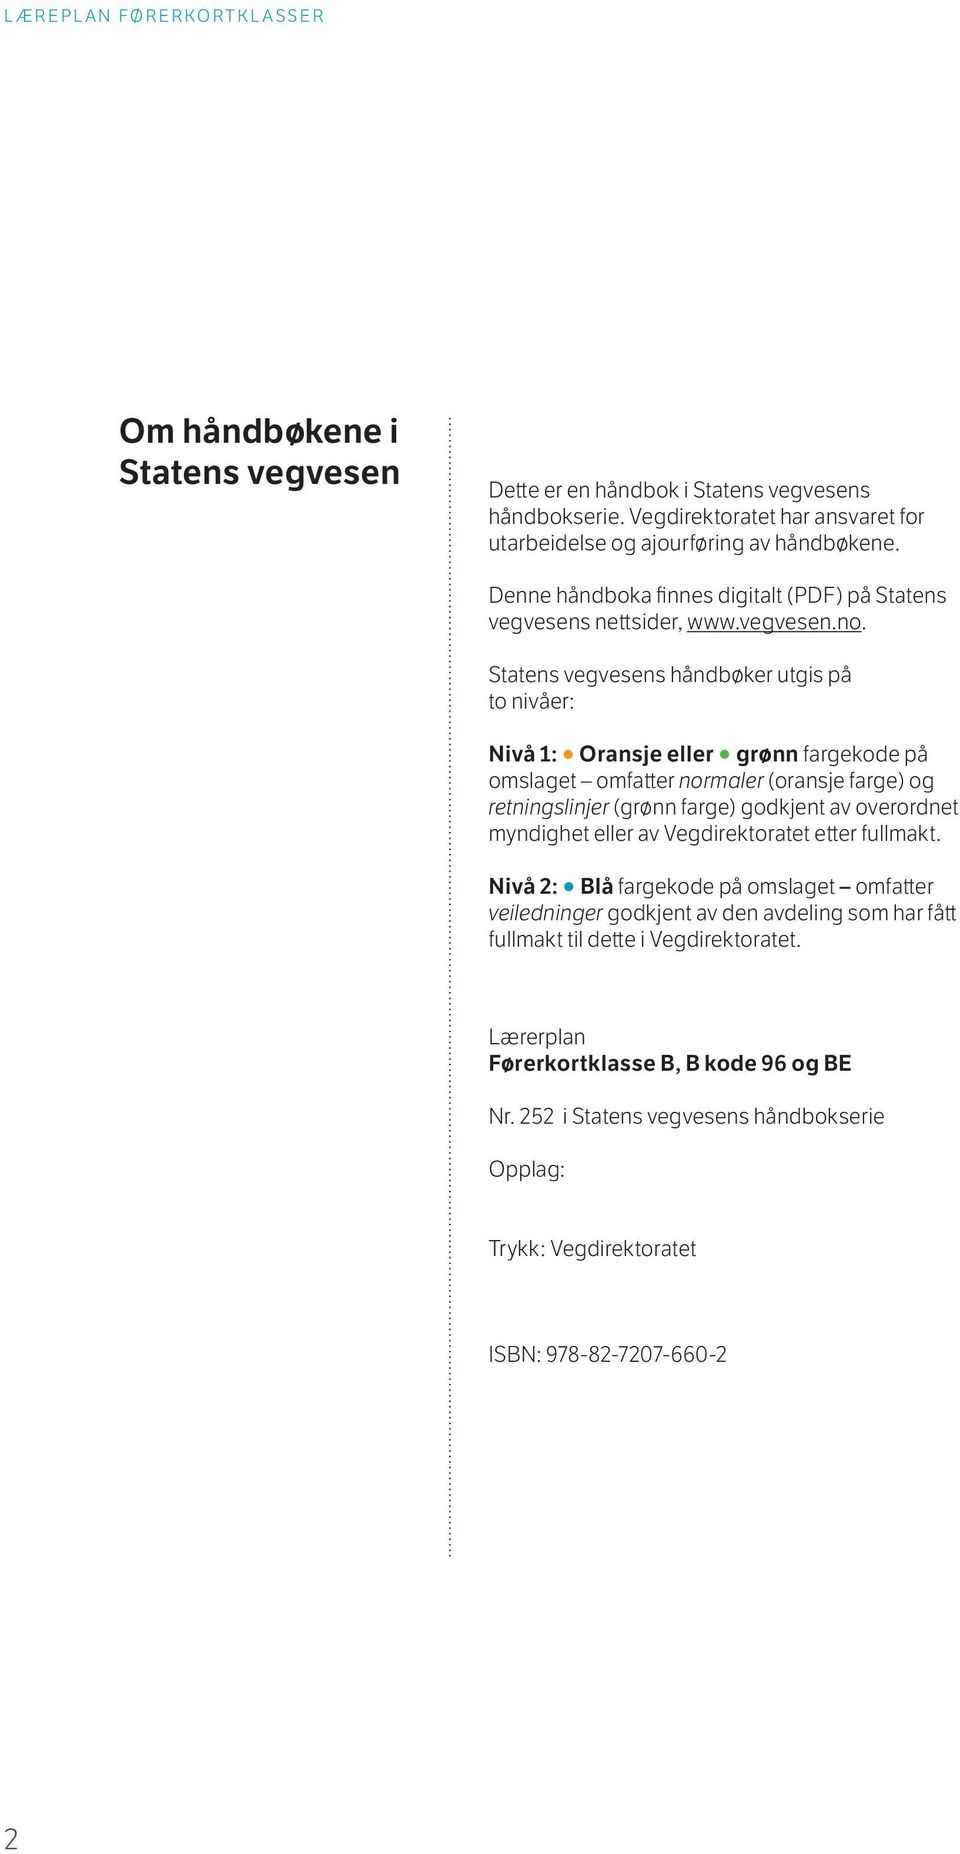 Statens vegvesens håndbøker utgis på to nivåer: Nivå 1: Oransje eller grønn fargekode på omslaget omfatter normaler (oransje farge) og retningslinjer (grønn farge) godkjent av overordnet